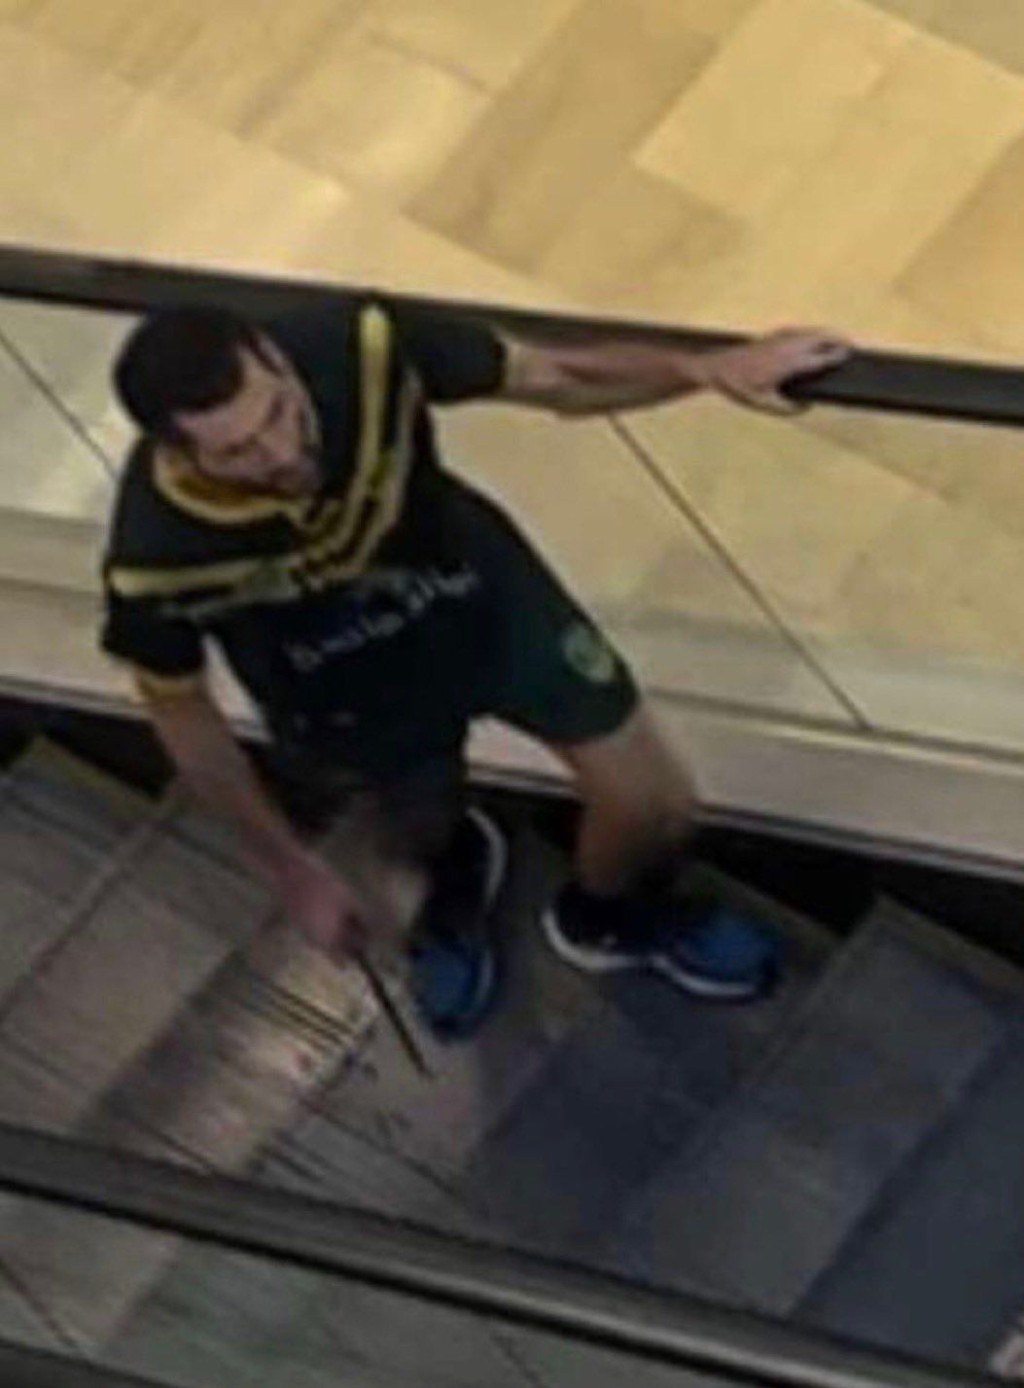 影片显示男子在购物中心内持刀在扶手电梯上奔跑。